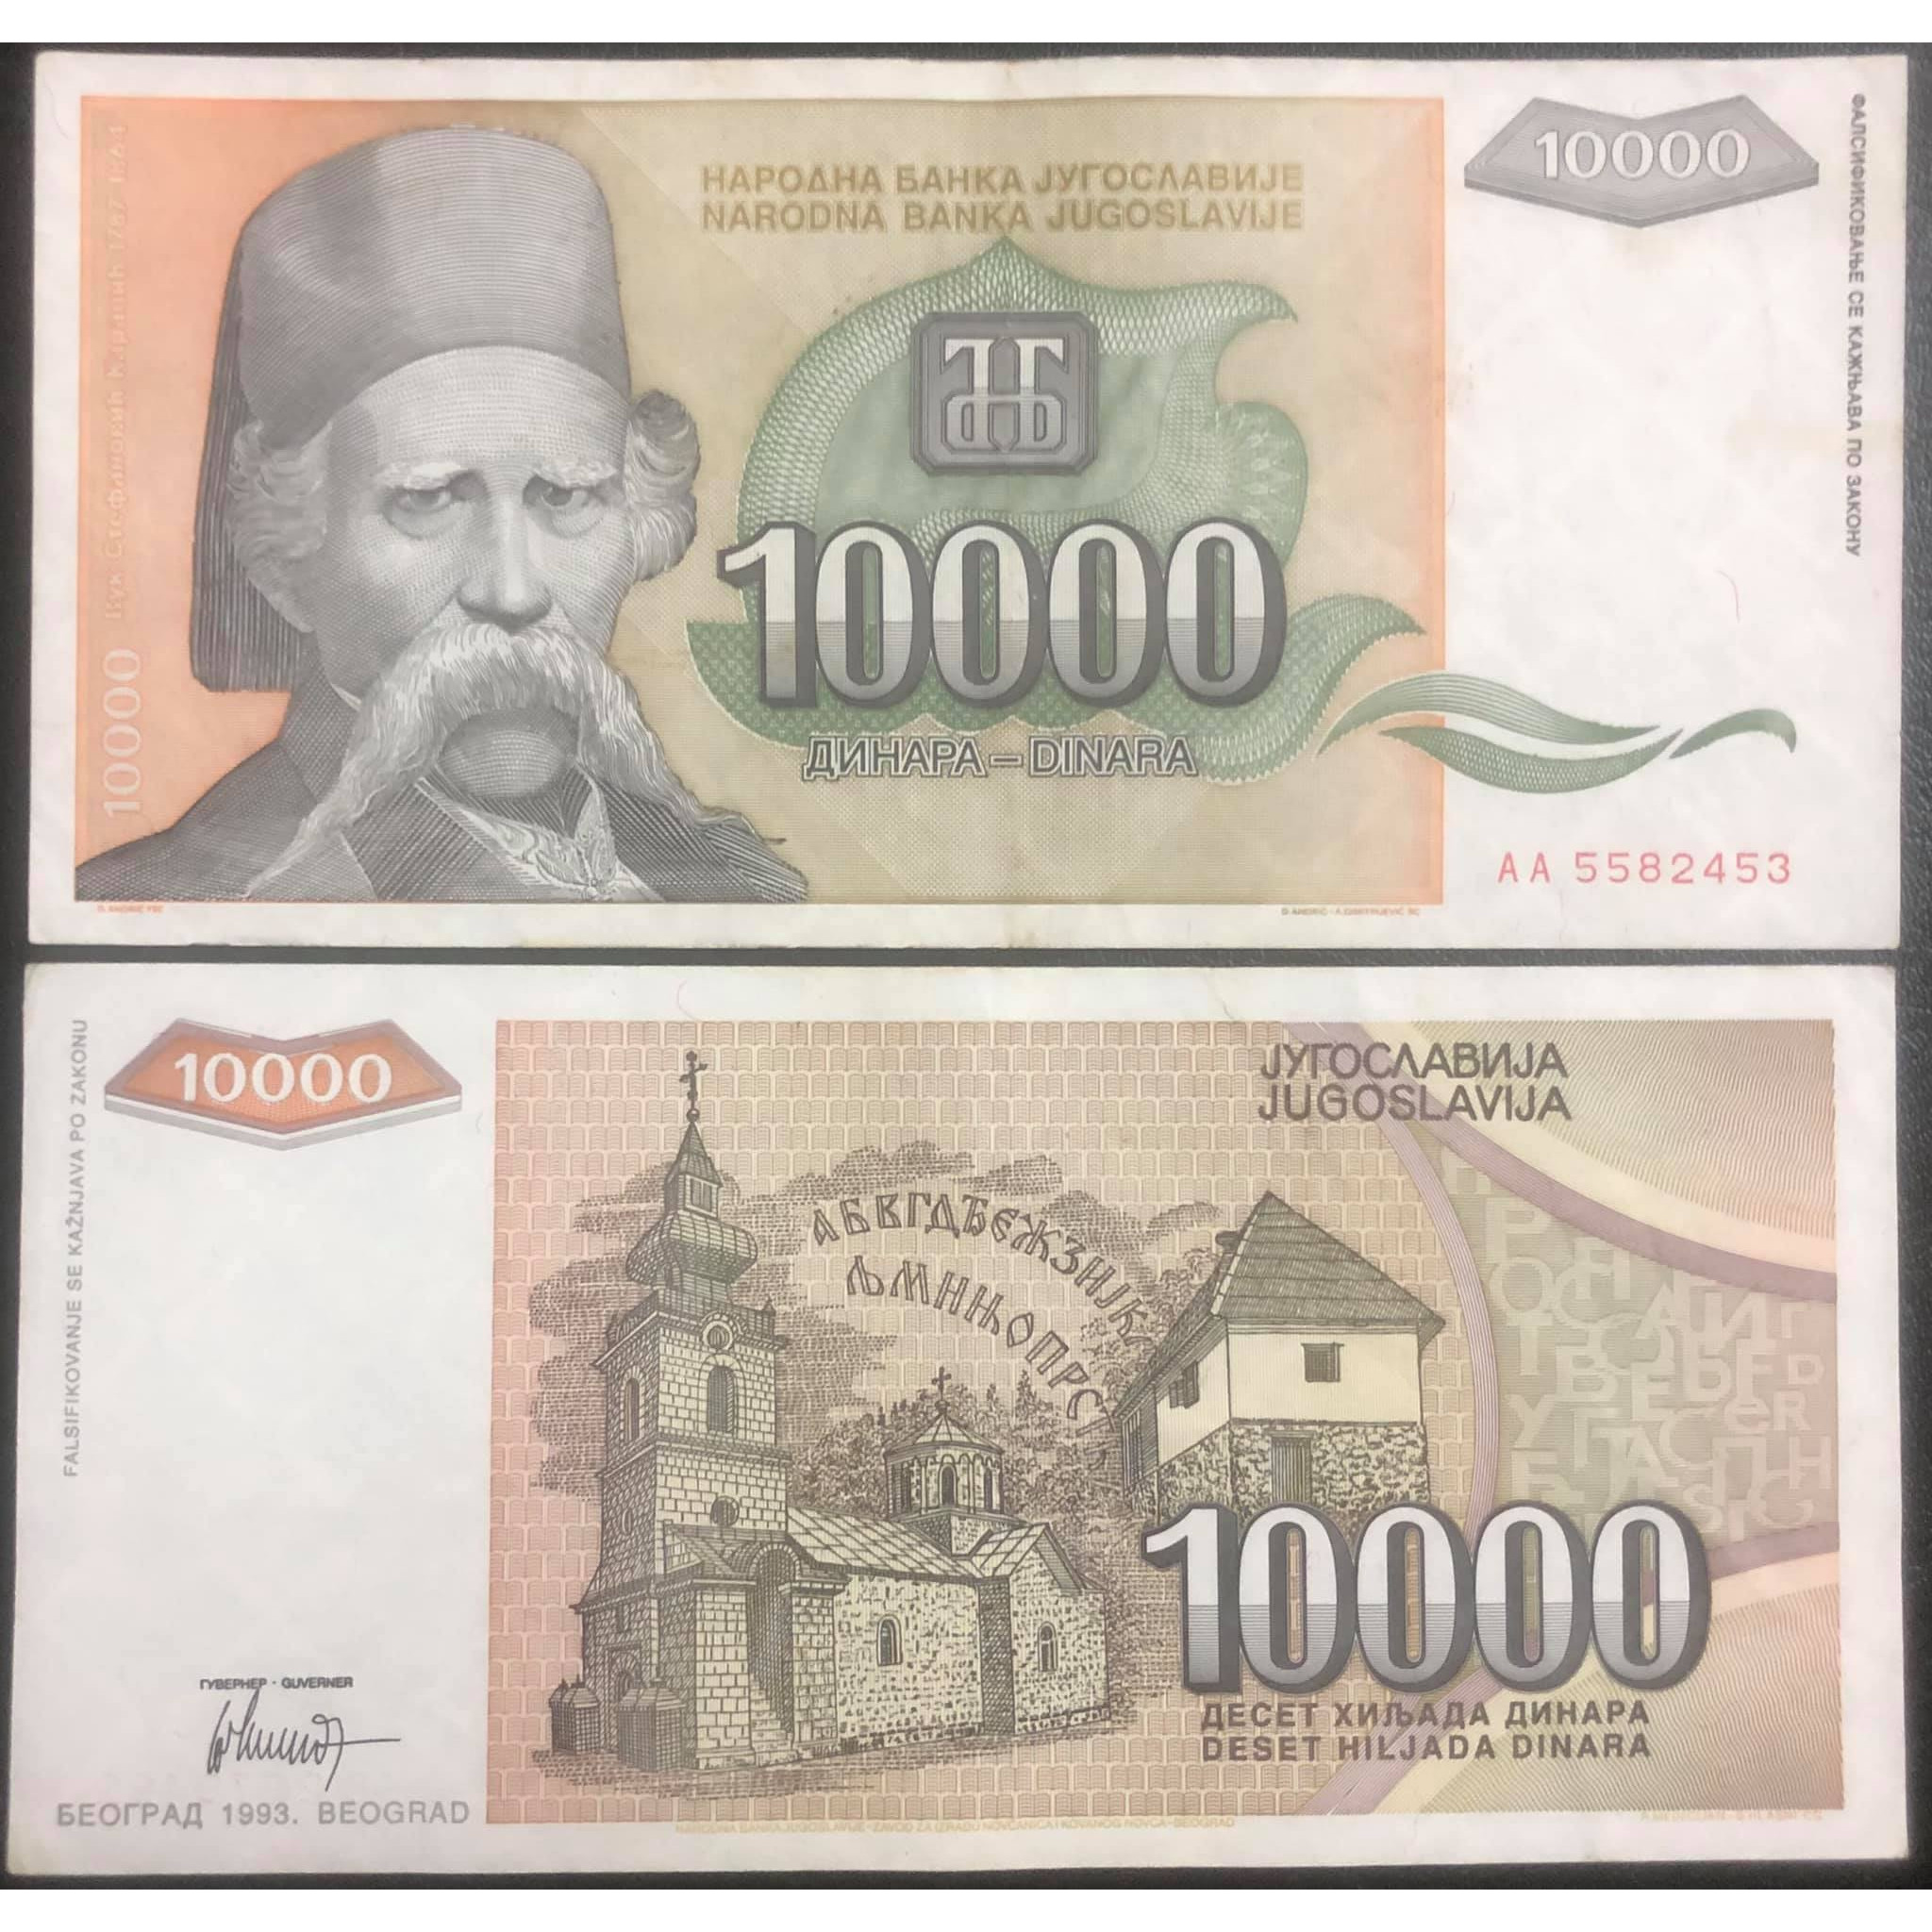 Tiền cổ Liên bang Nam Tư cũ 10000 dinara, quốc gia không còn tồn tại